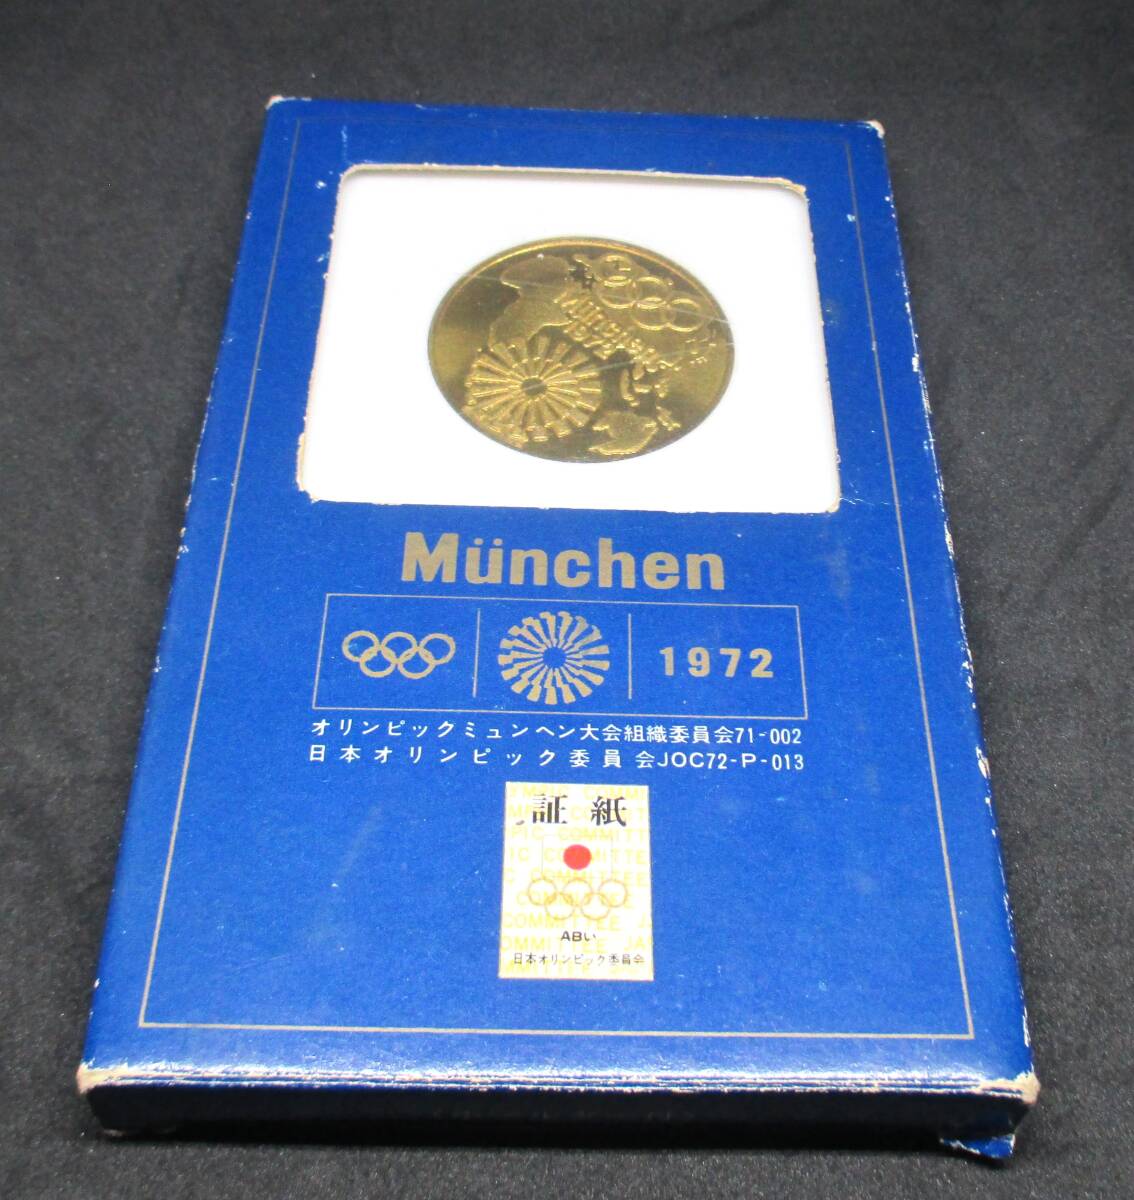 ◆1972ミュンヘンオリンピック記念メダル◆oy93の画像1